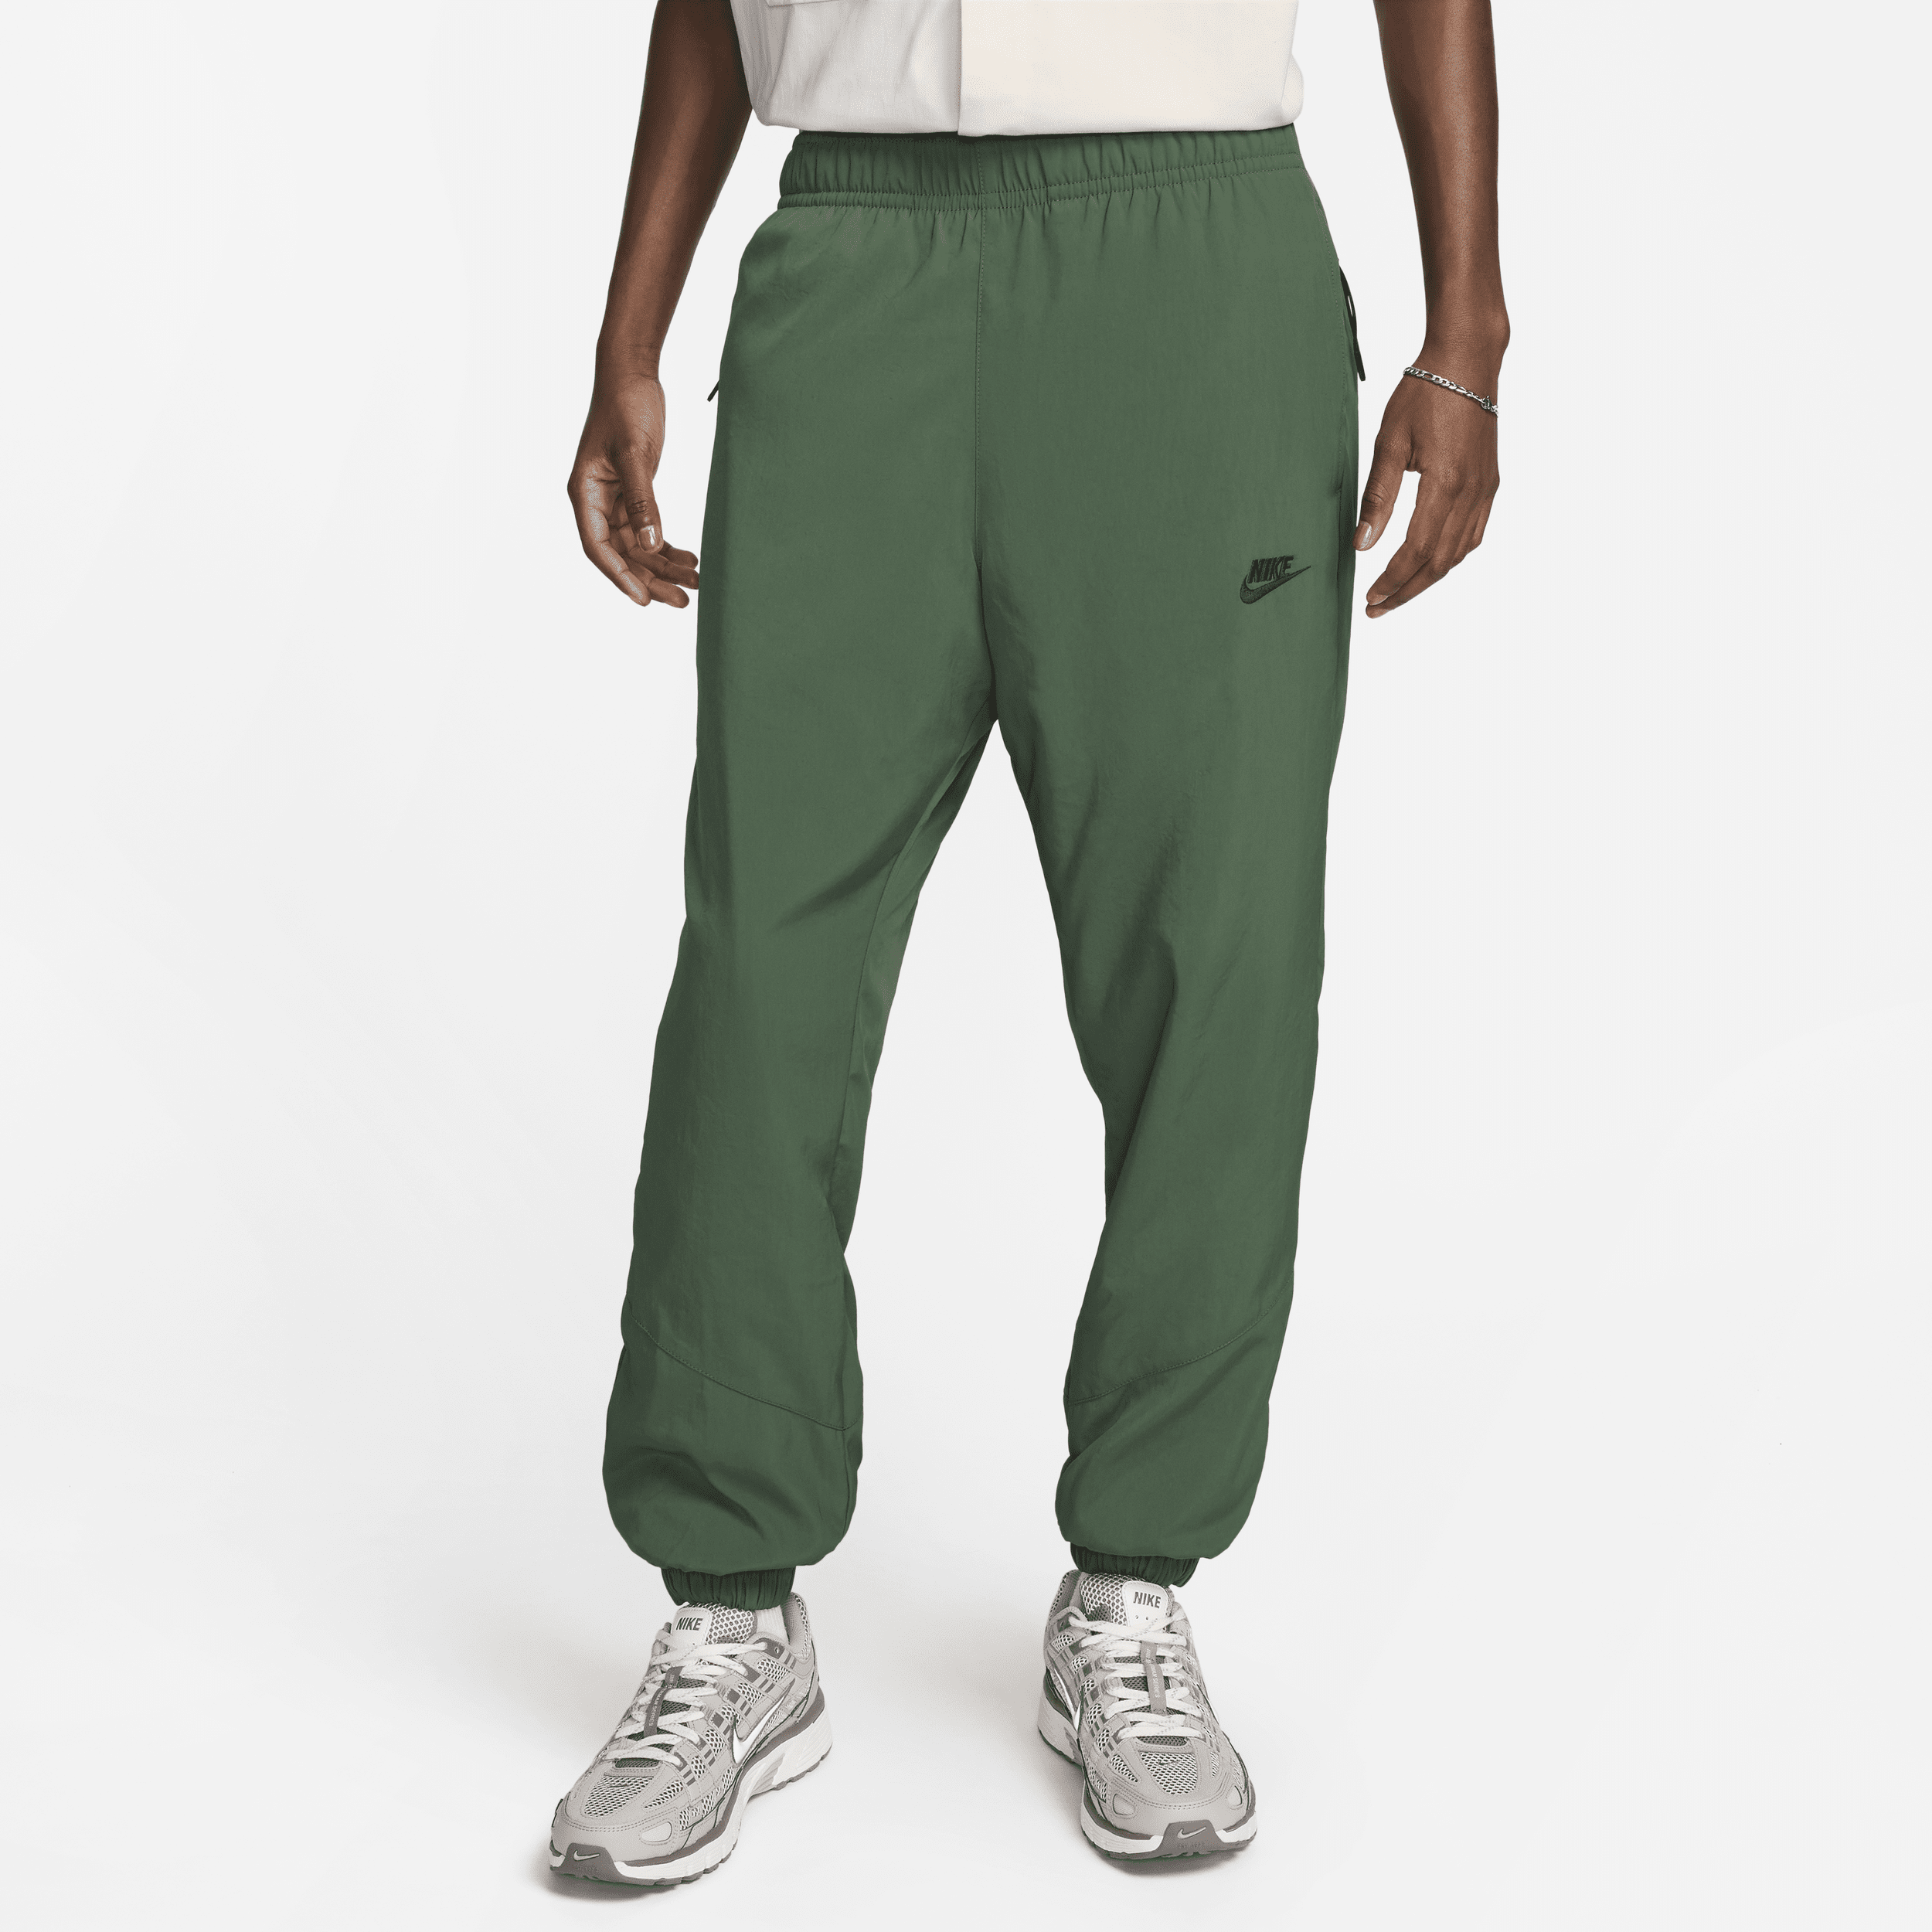 Pantaloni in tessuto per l'inverno Nike Windrunner – Uomo - Verde